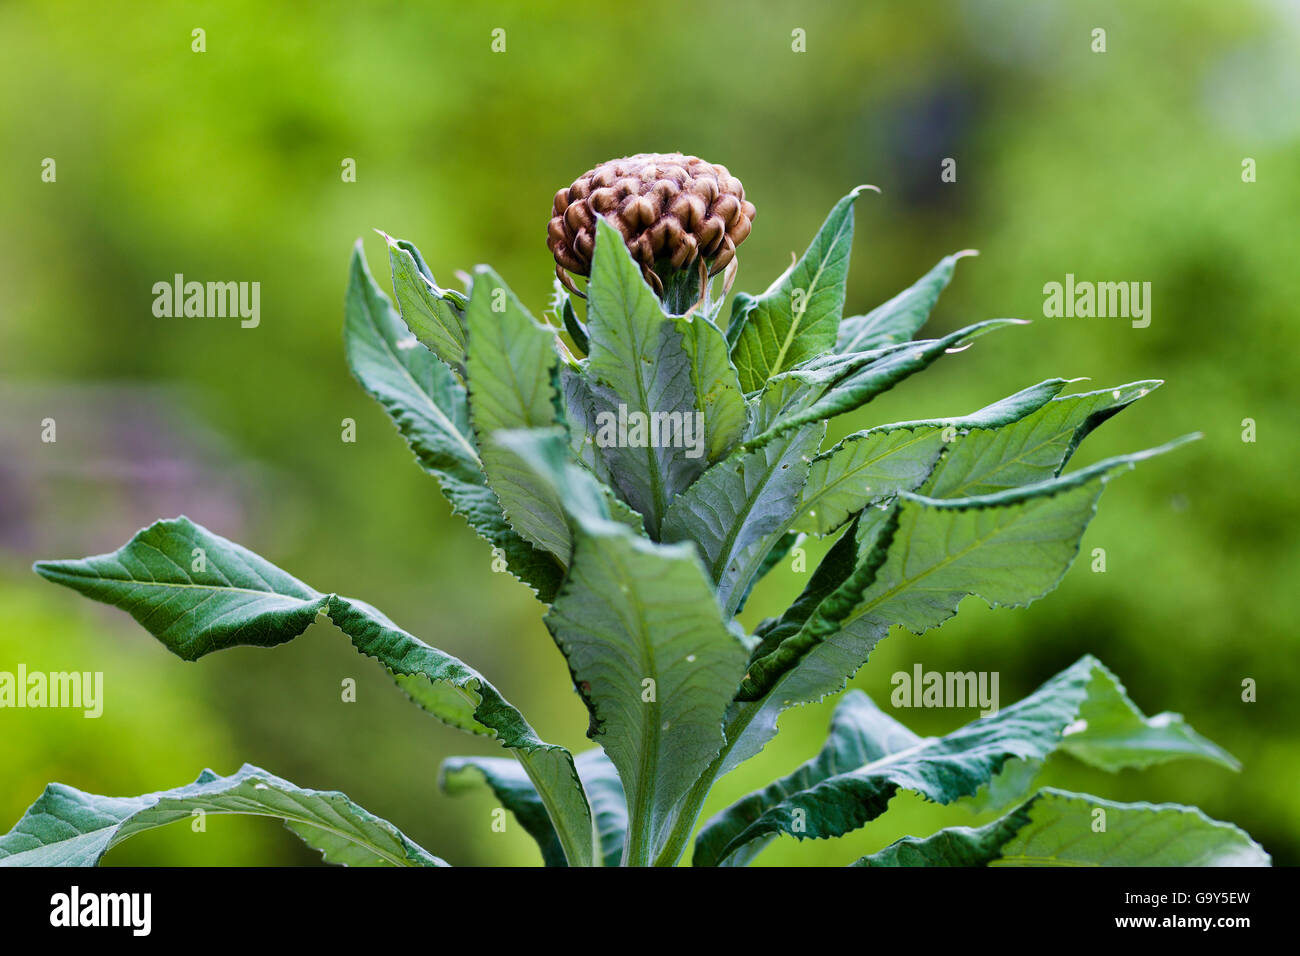 Bud of Rhaponticum scariosum subsp. rhaponticum Stock Photo